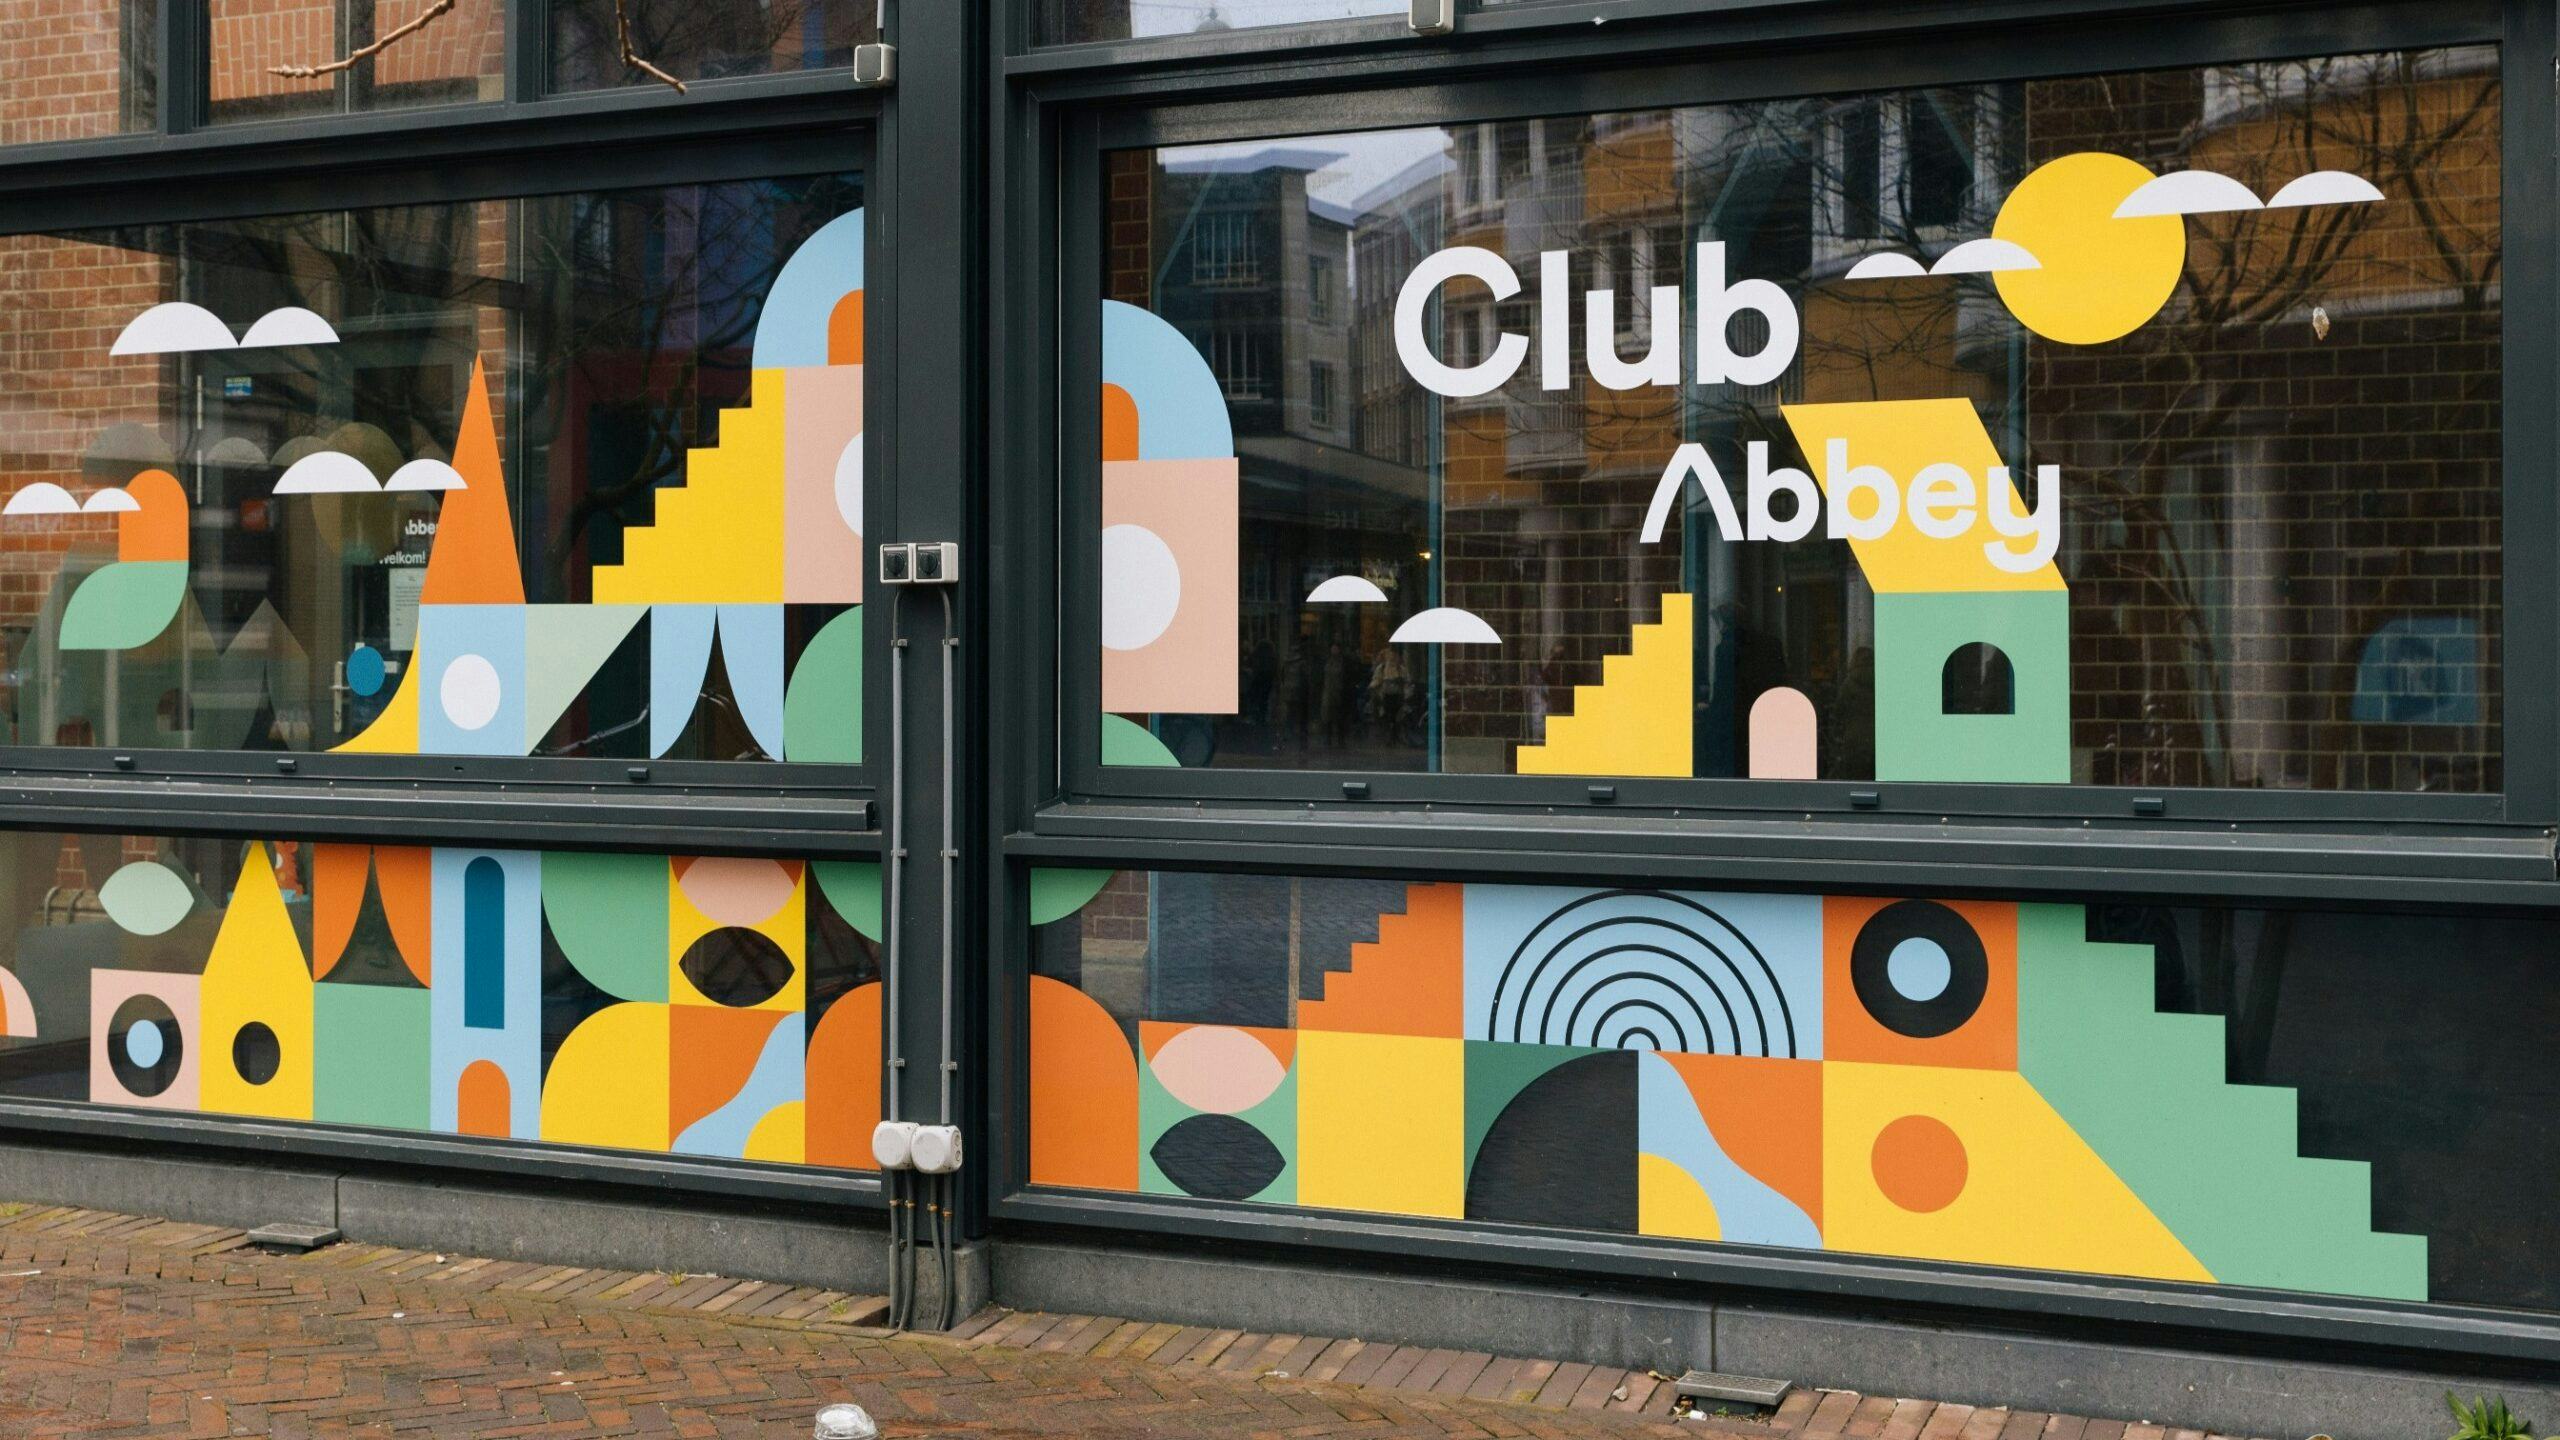 Club Abbey: horeca voor ouders met jonge kinderen